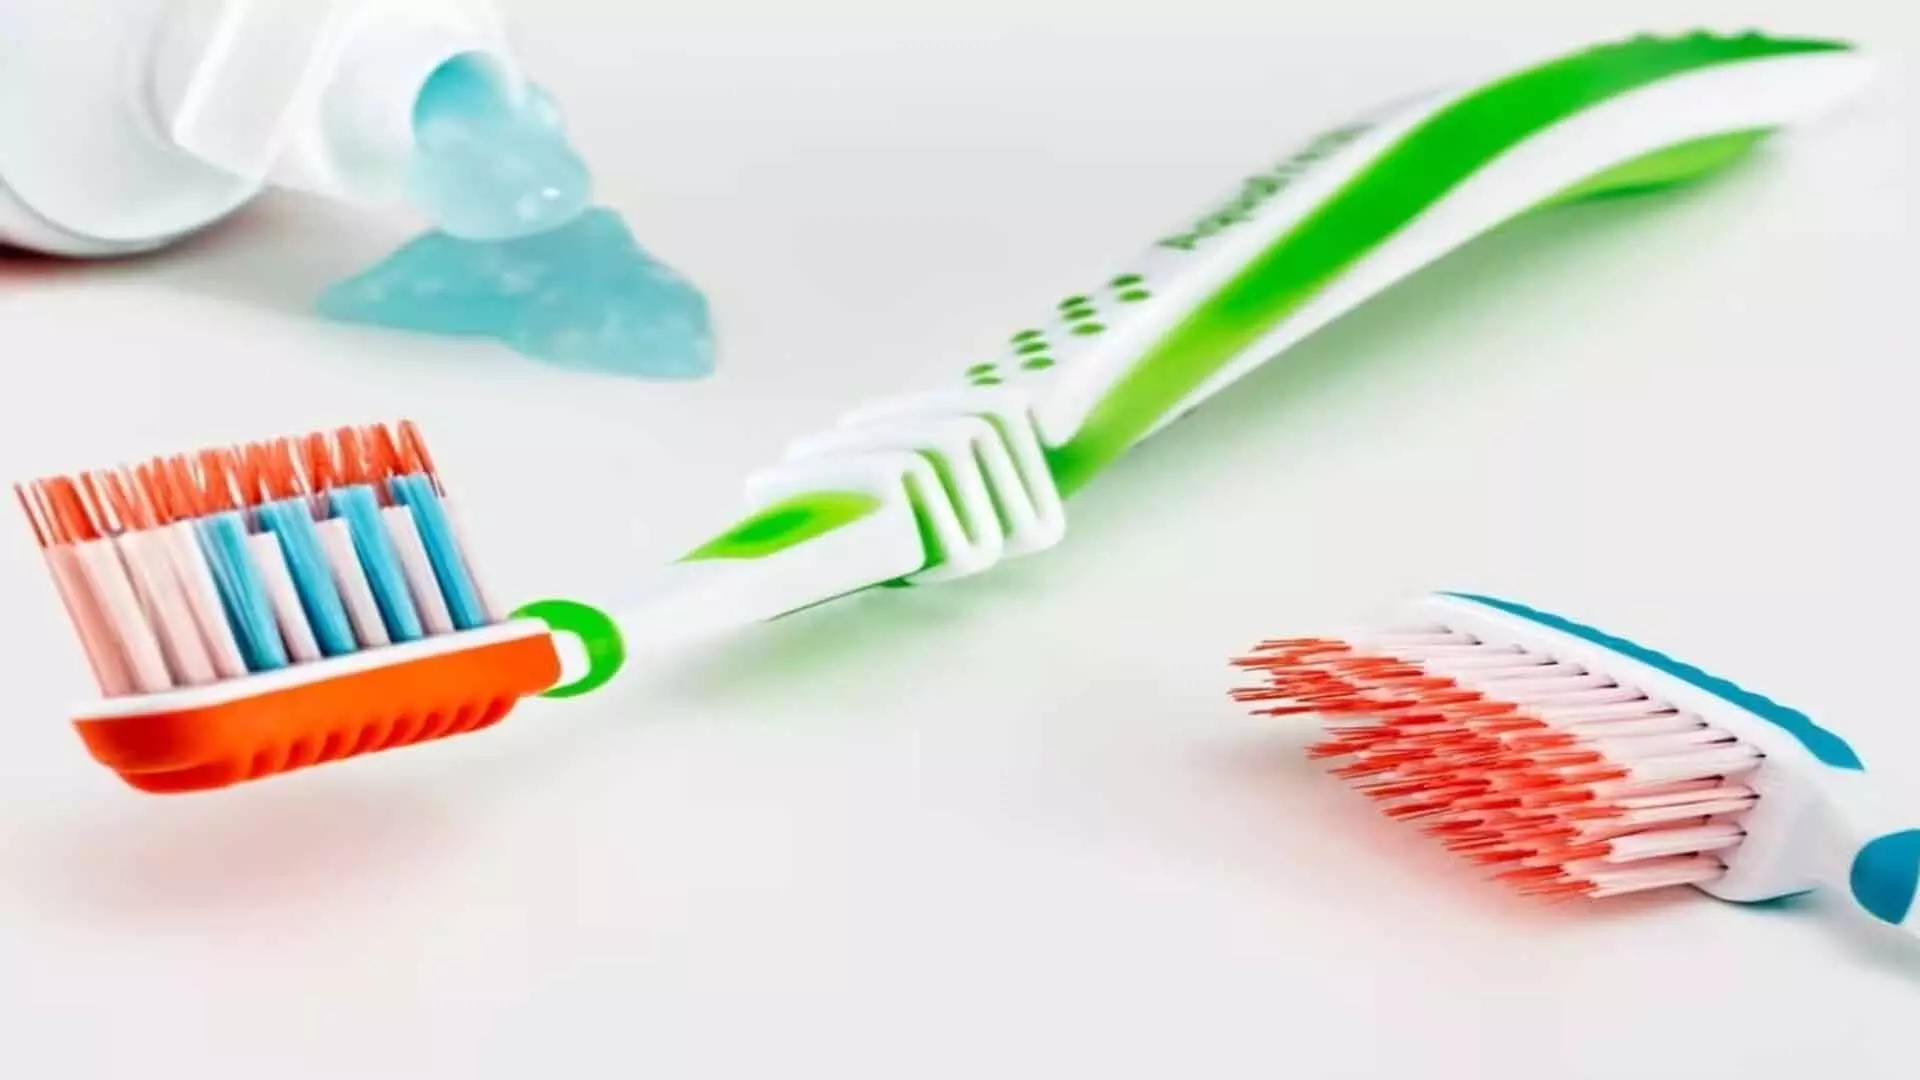 toothbrush: जान लें कब बदले टूथब्रश और कैसे रखें साफ